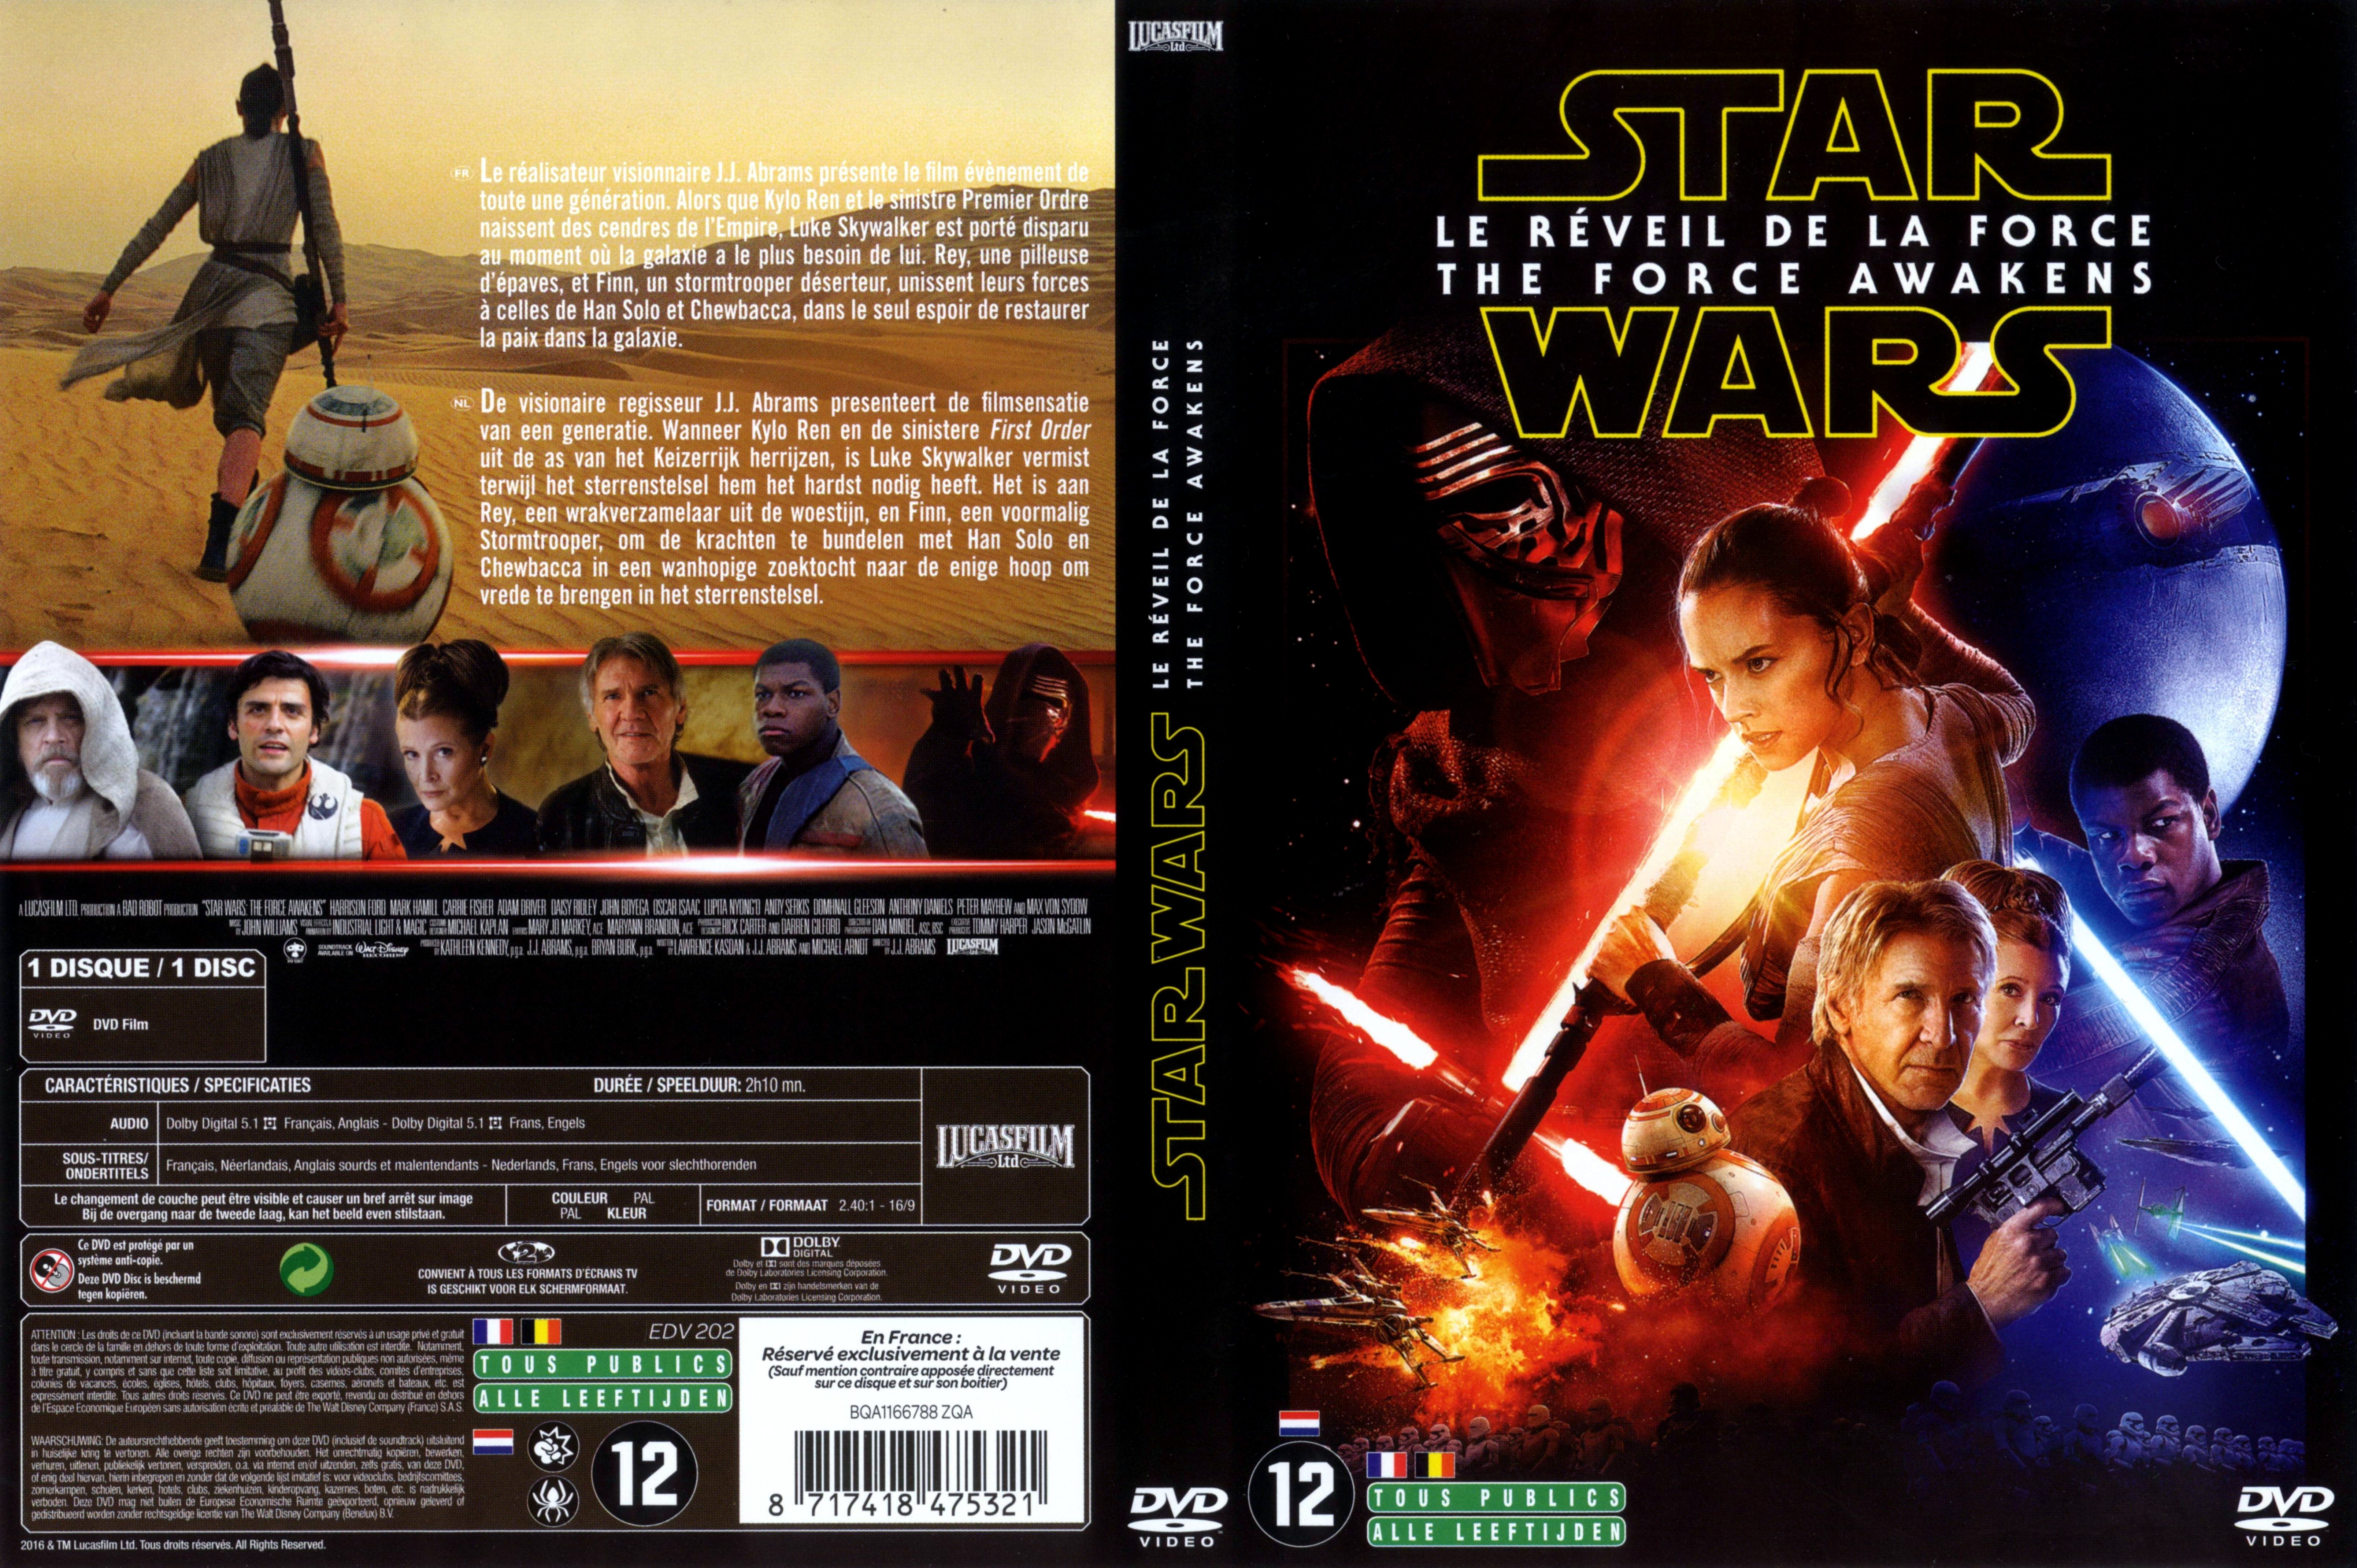 Jaquette DVD Star Wars Episode VII Le Reveil de la Force